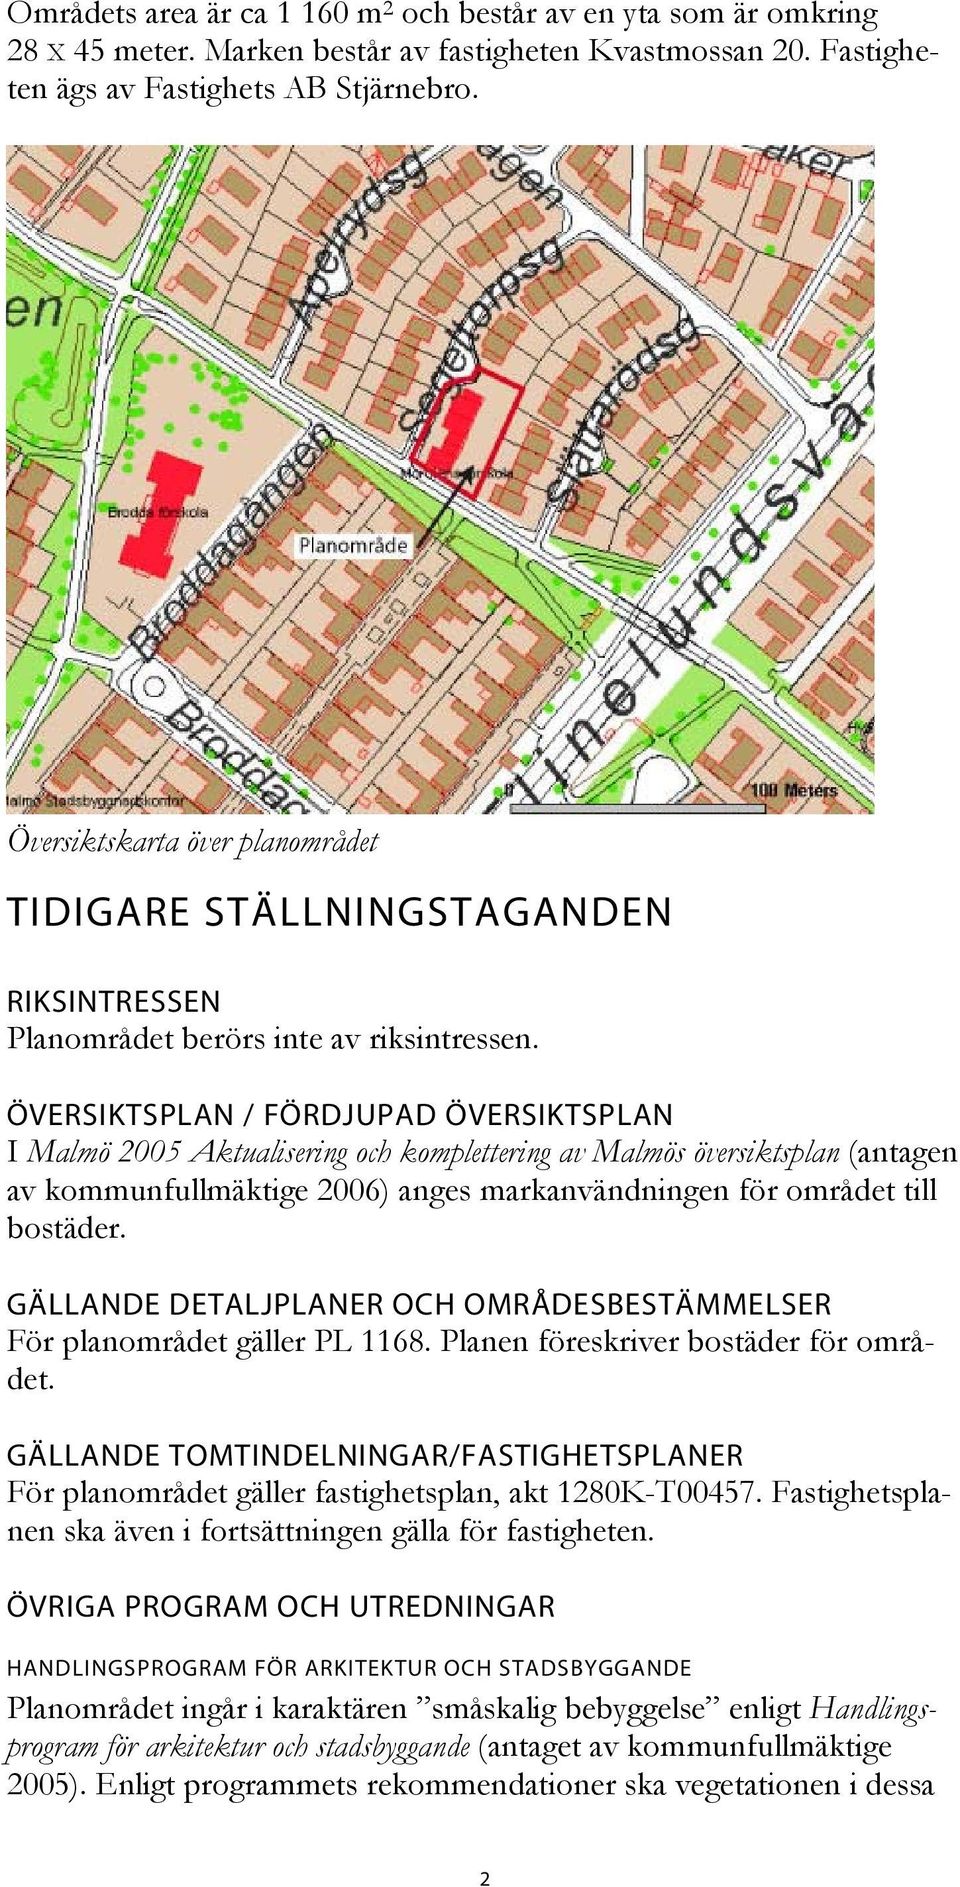 ÖVERSIKTSPLAN / FÖRDJUPAD ÖVERSIKTSPLAN I Malmö 2005 Aktualisering och komplettering av Malmös översiktsplan (antagen av kommunfullmäktige 2006) anges markanvändningen för området till bostäder.